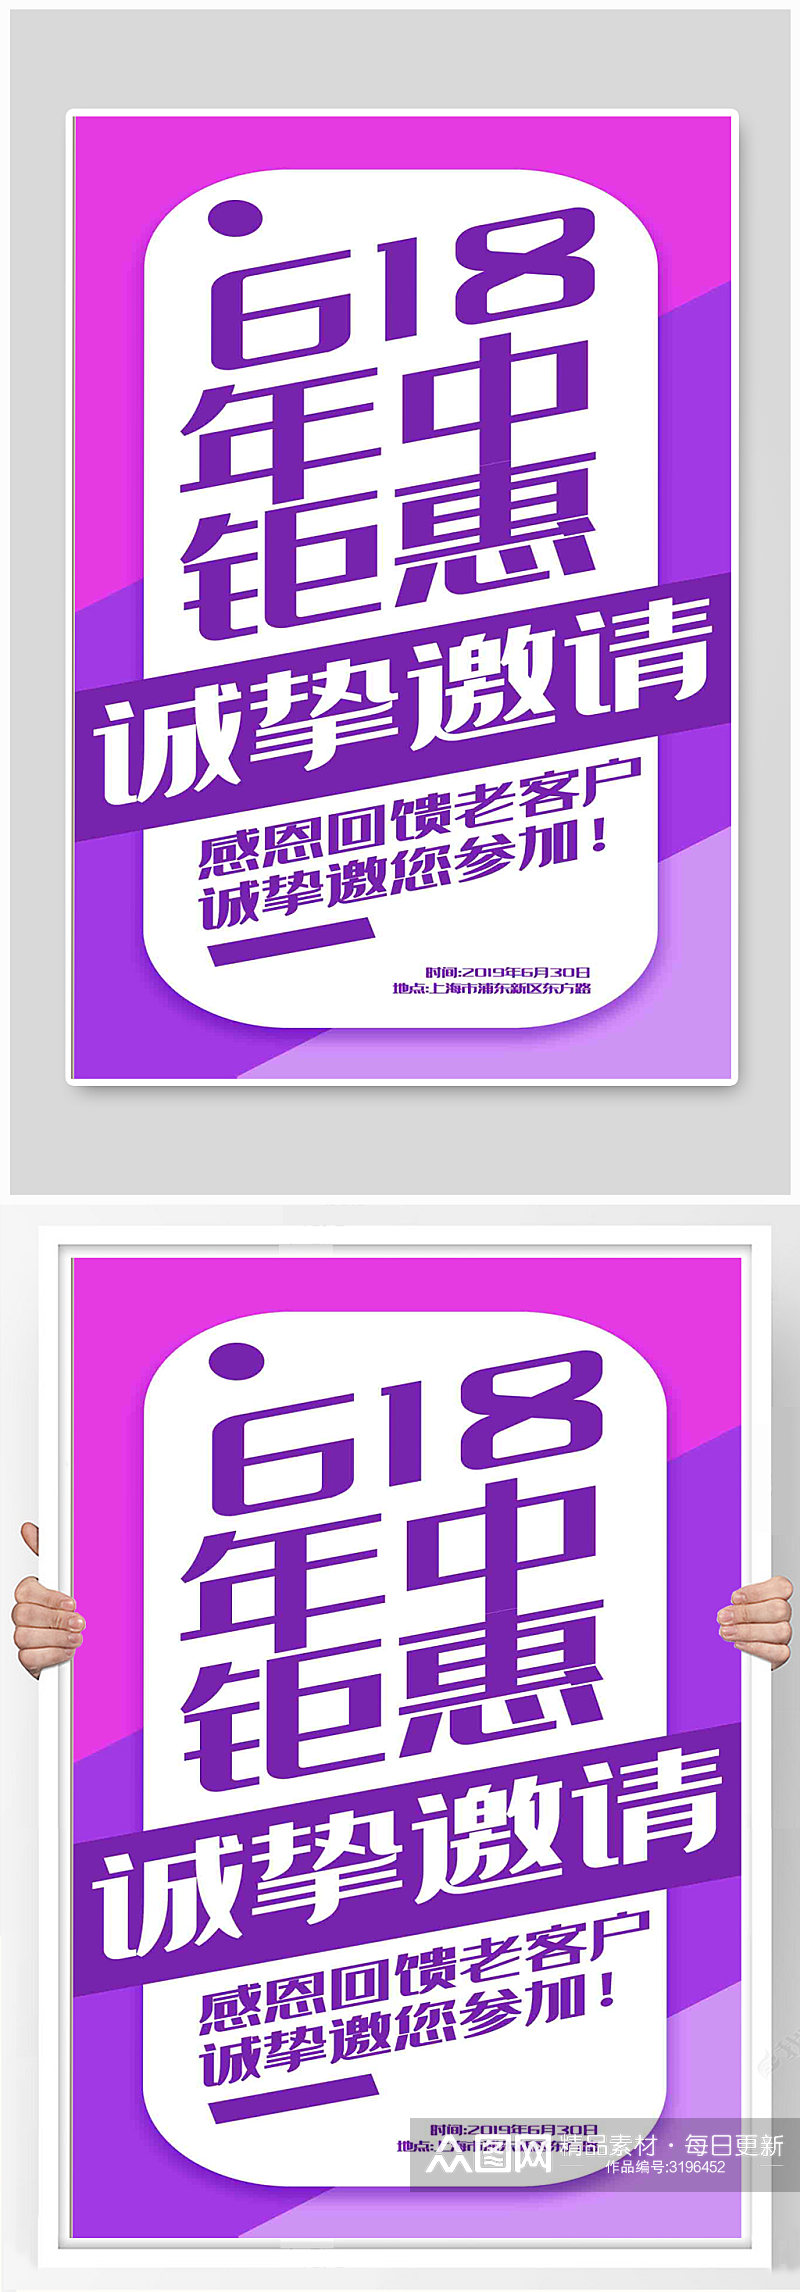 紫色拼色618年中钜惠邀请函海报素材